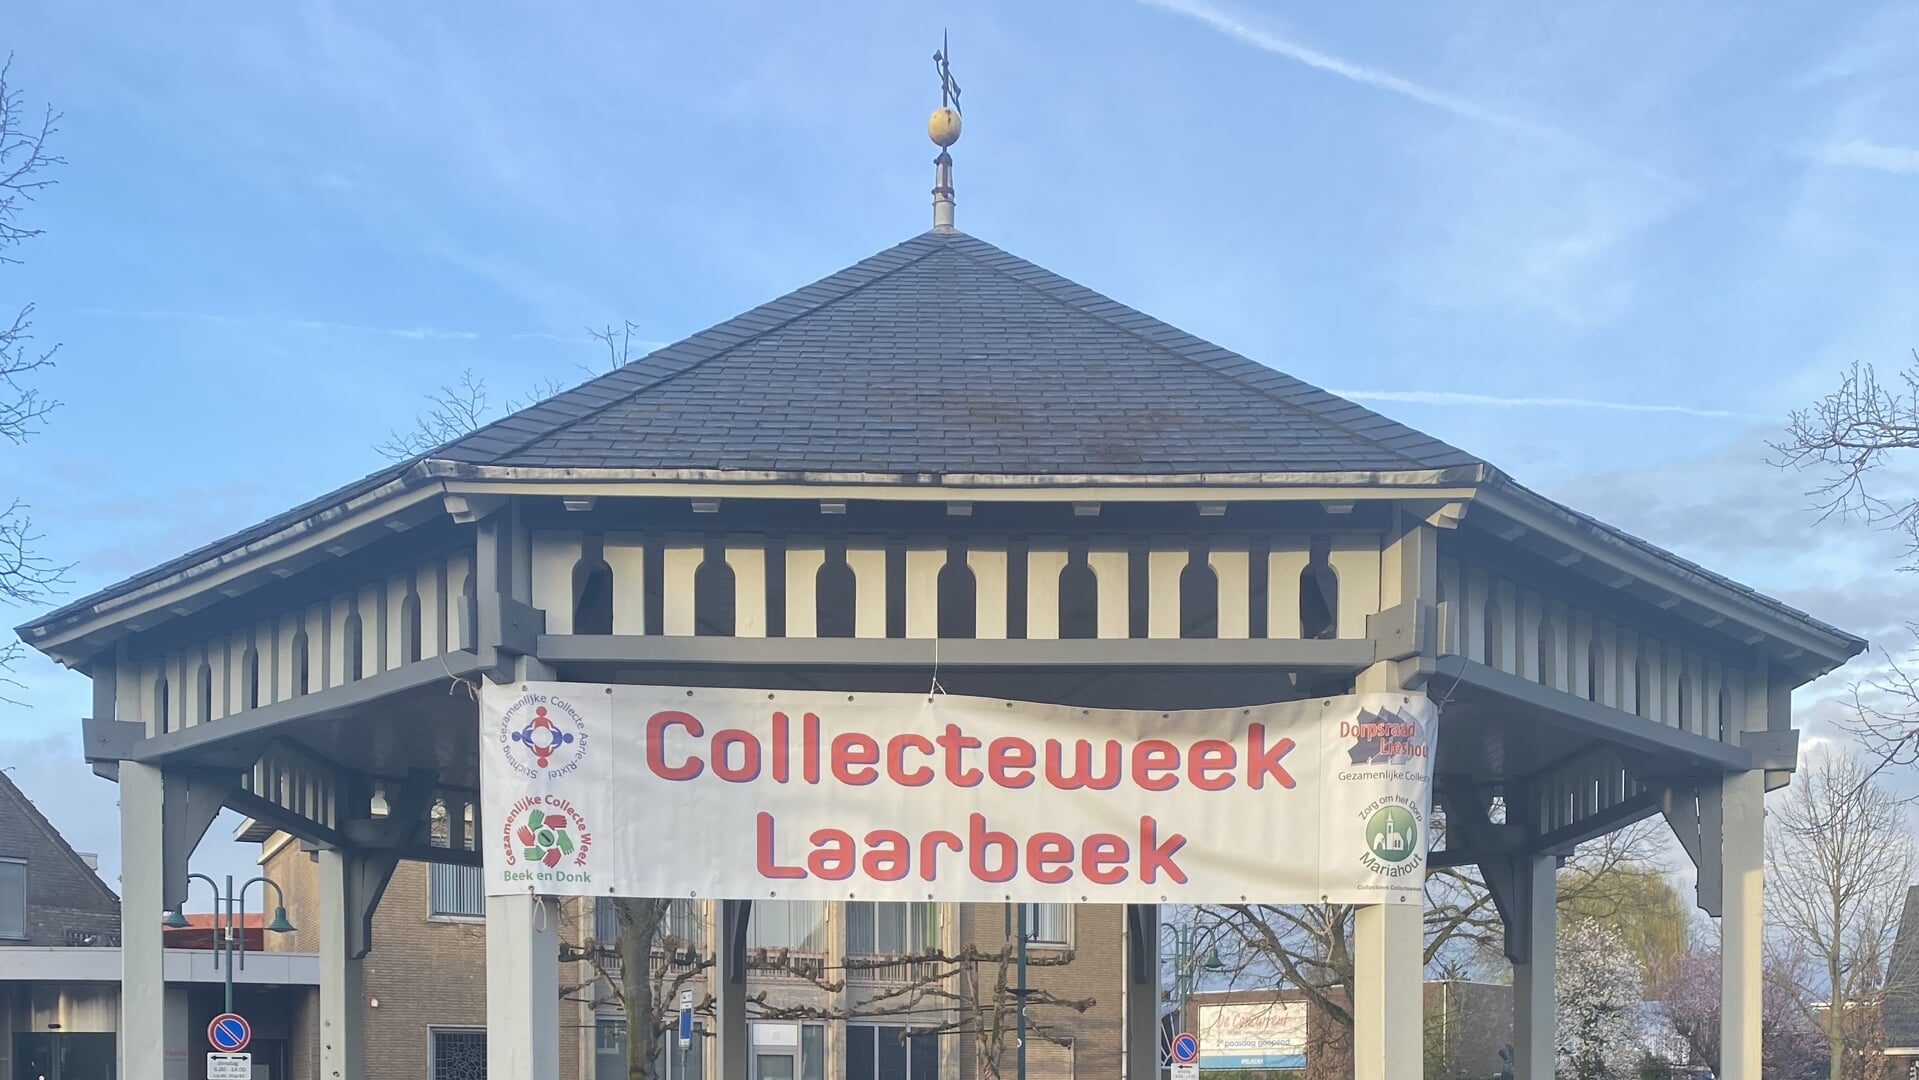 De gezamenlijke collecteweek is er weer. Ook in Lieshout is dat duidelijk te zien.